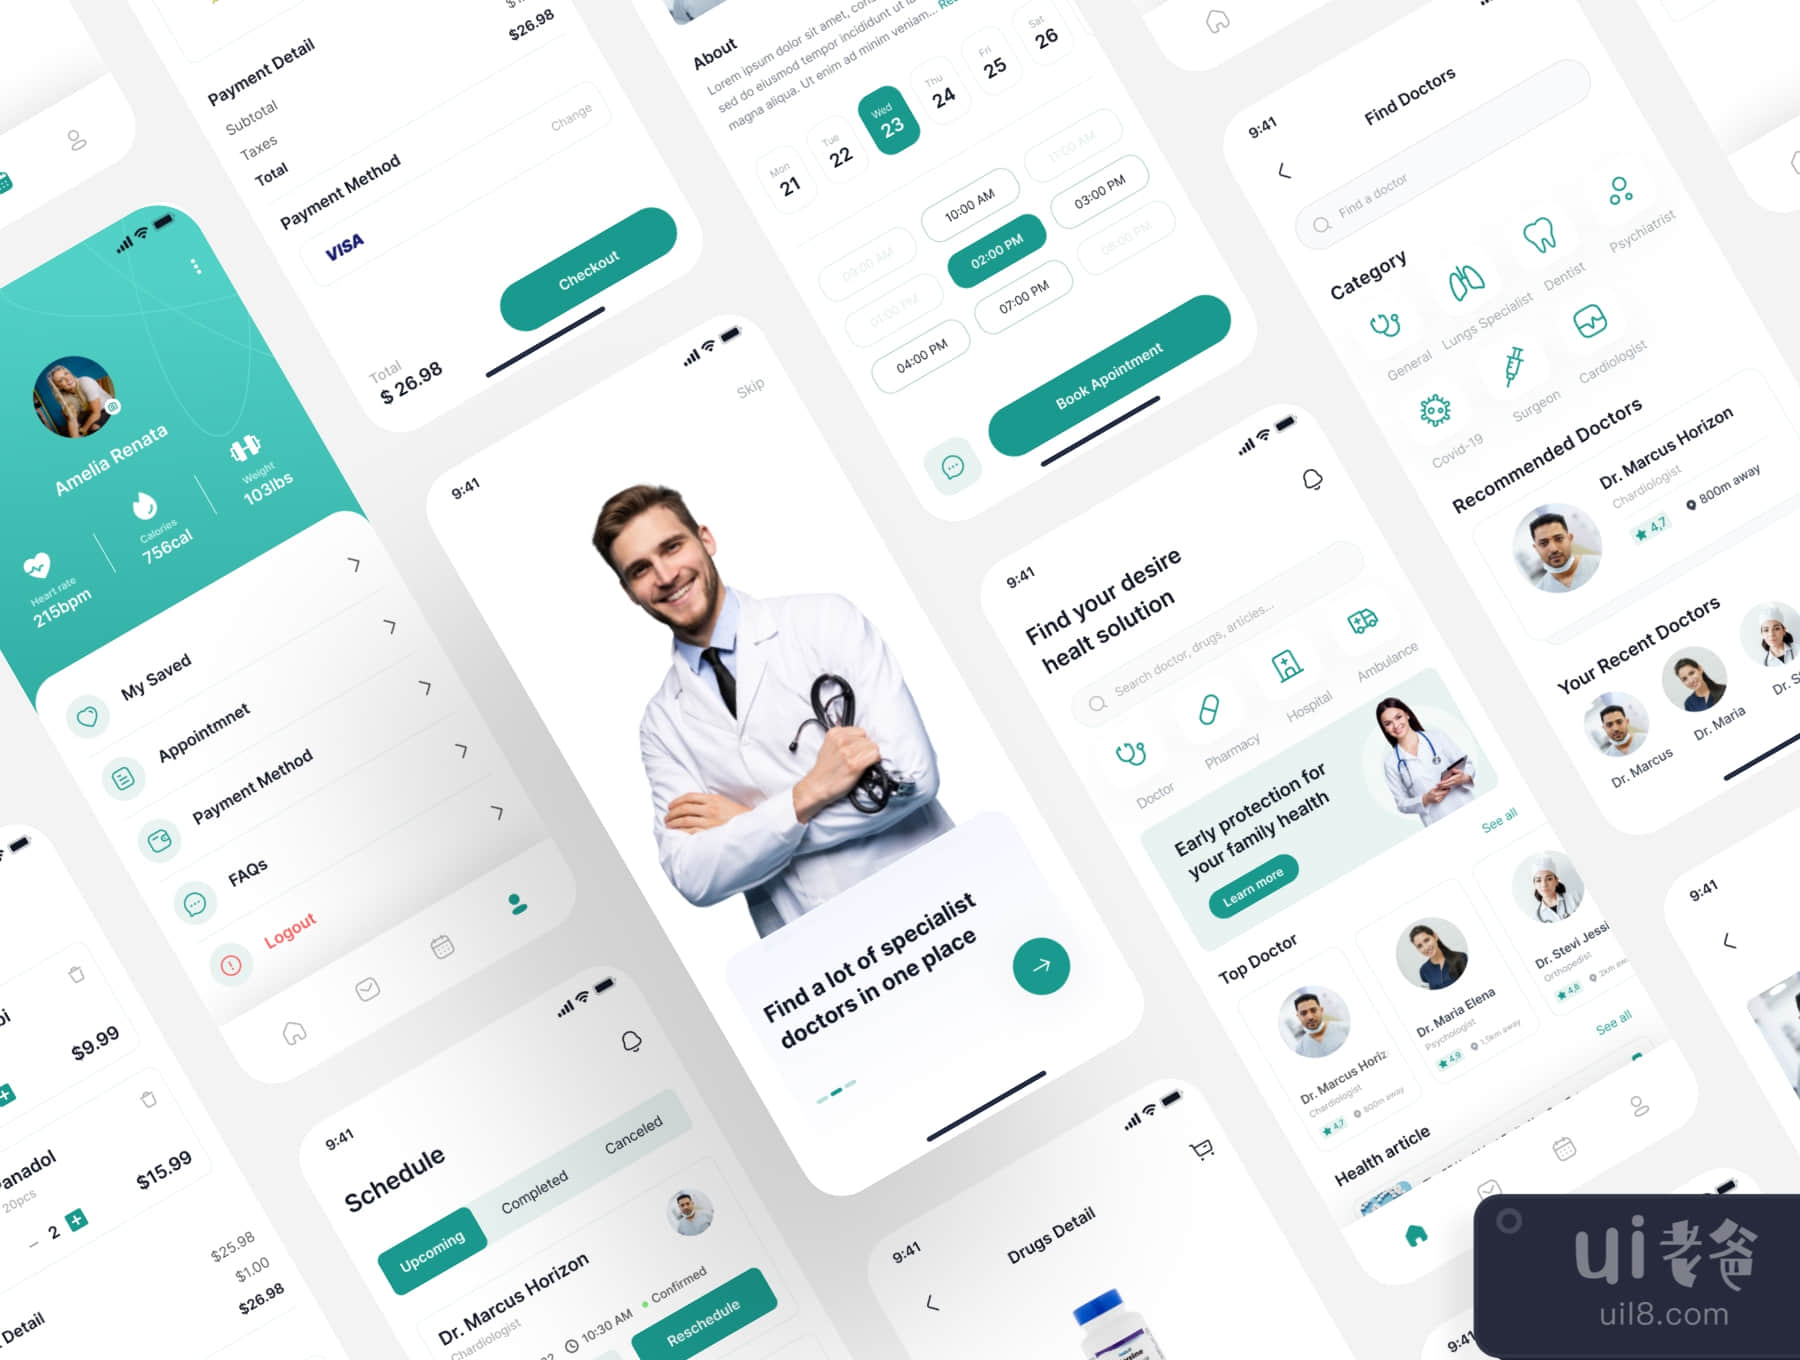 医务人员 - 医疗应用UI套件 (Medics - Medical App UI Kit)插图5